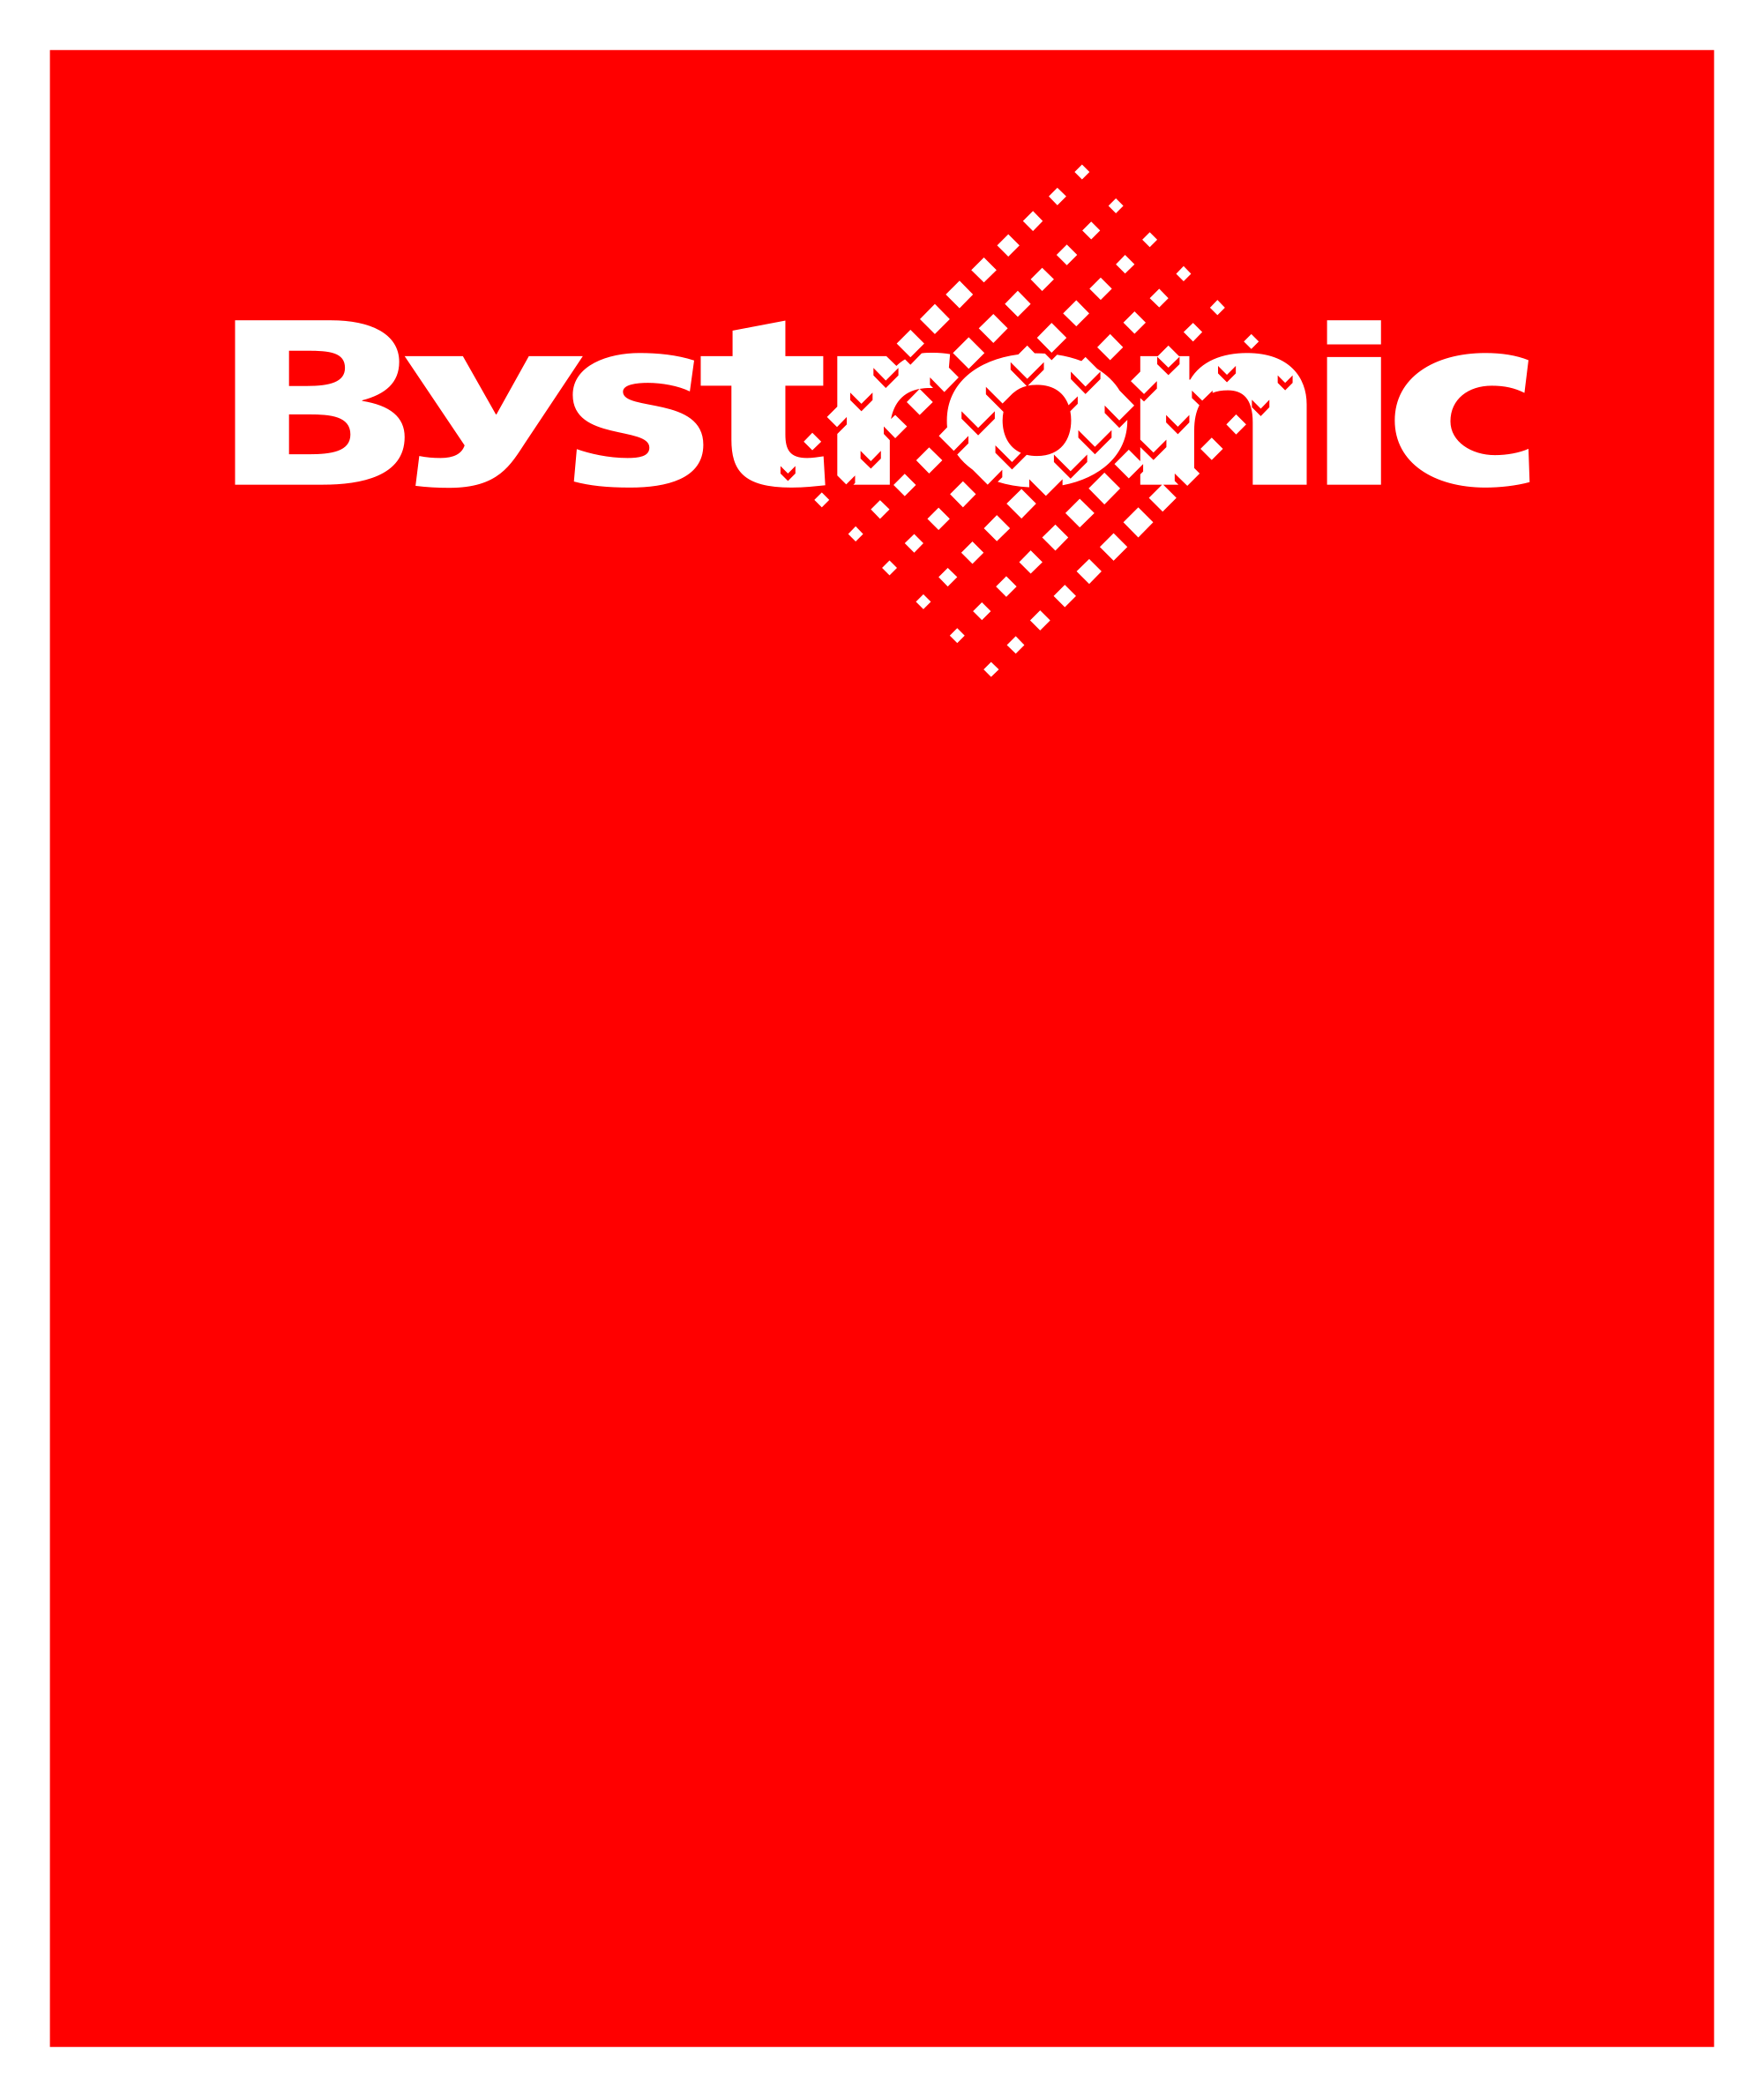 Logo von Bystronic